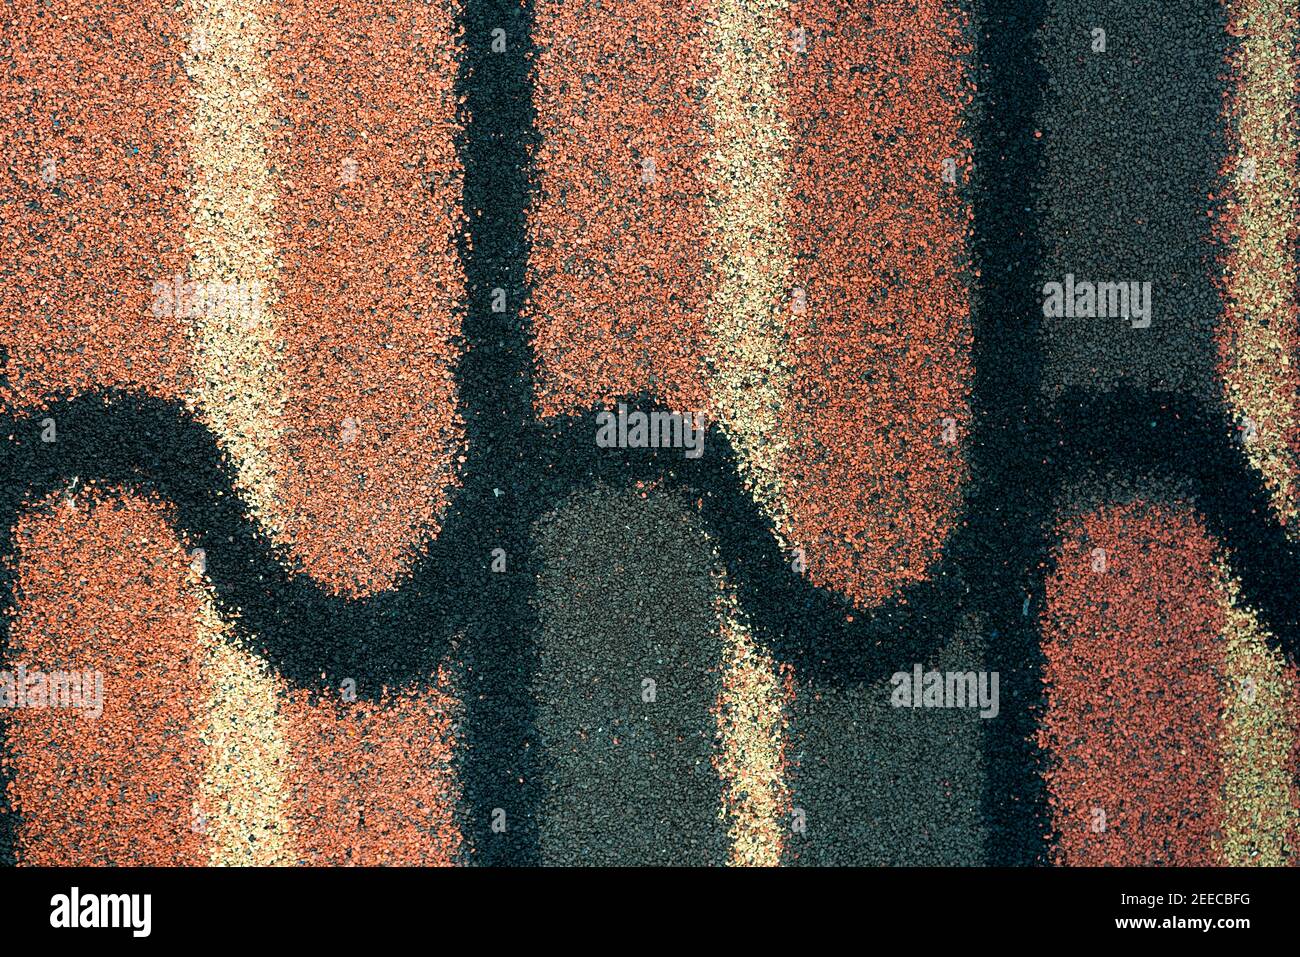 Schindeldach Textur Hintergrund. Dachmaterial. Dicht von rauhen braun, grün, schwarz, gelb Granulat Oberfläche Schindeldach Textur Hintergrund. Stockfoto